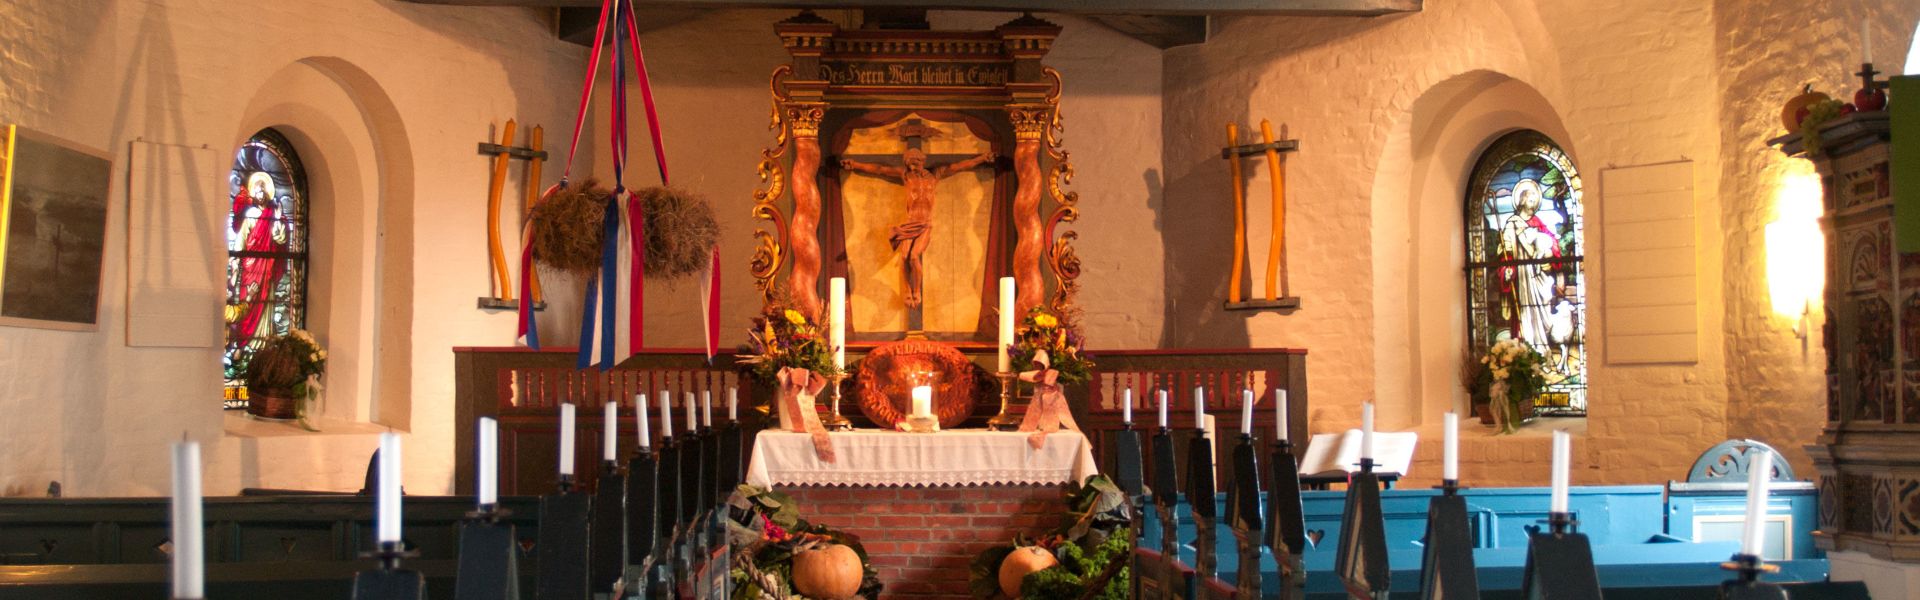 Innenaufnahme der Hooger Kirche, für Erntedank mit Früchten und Gemüse geschmückt